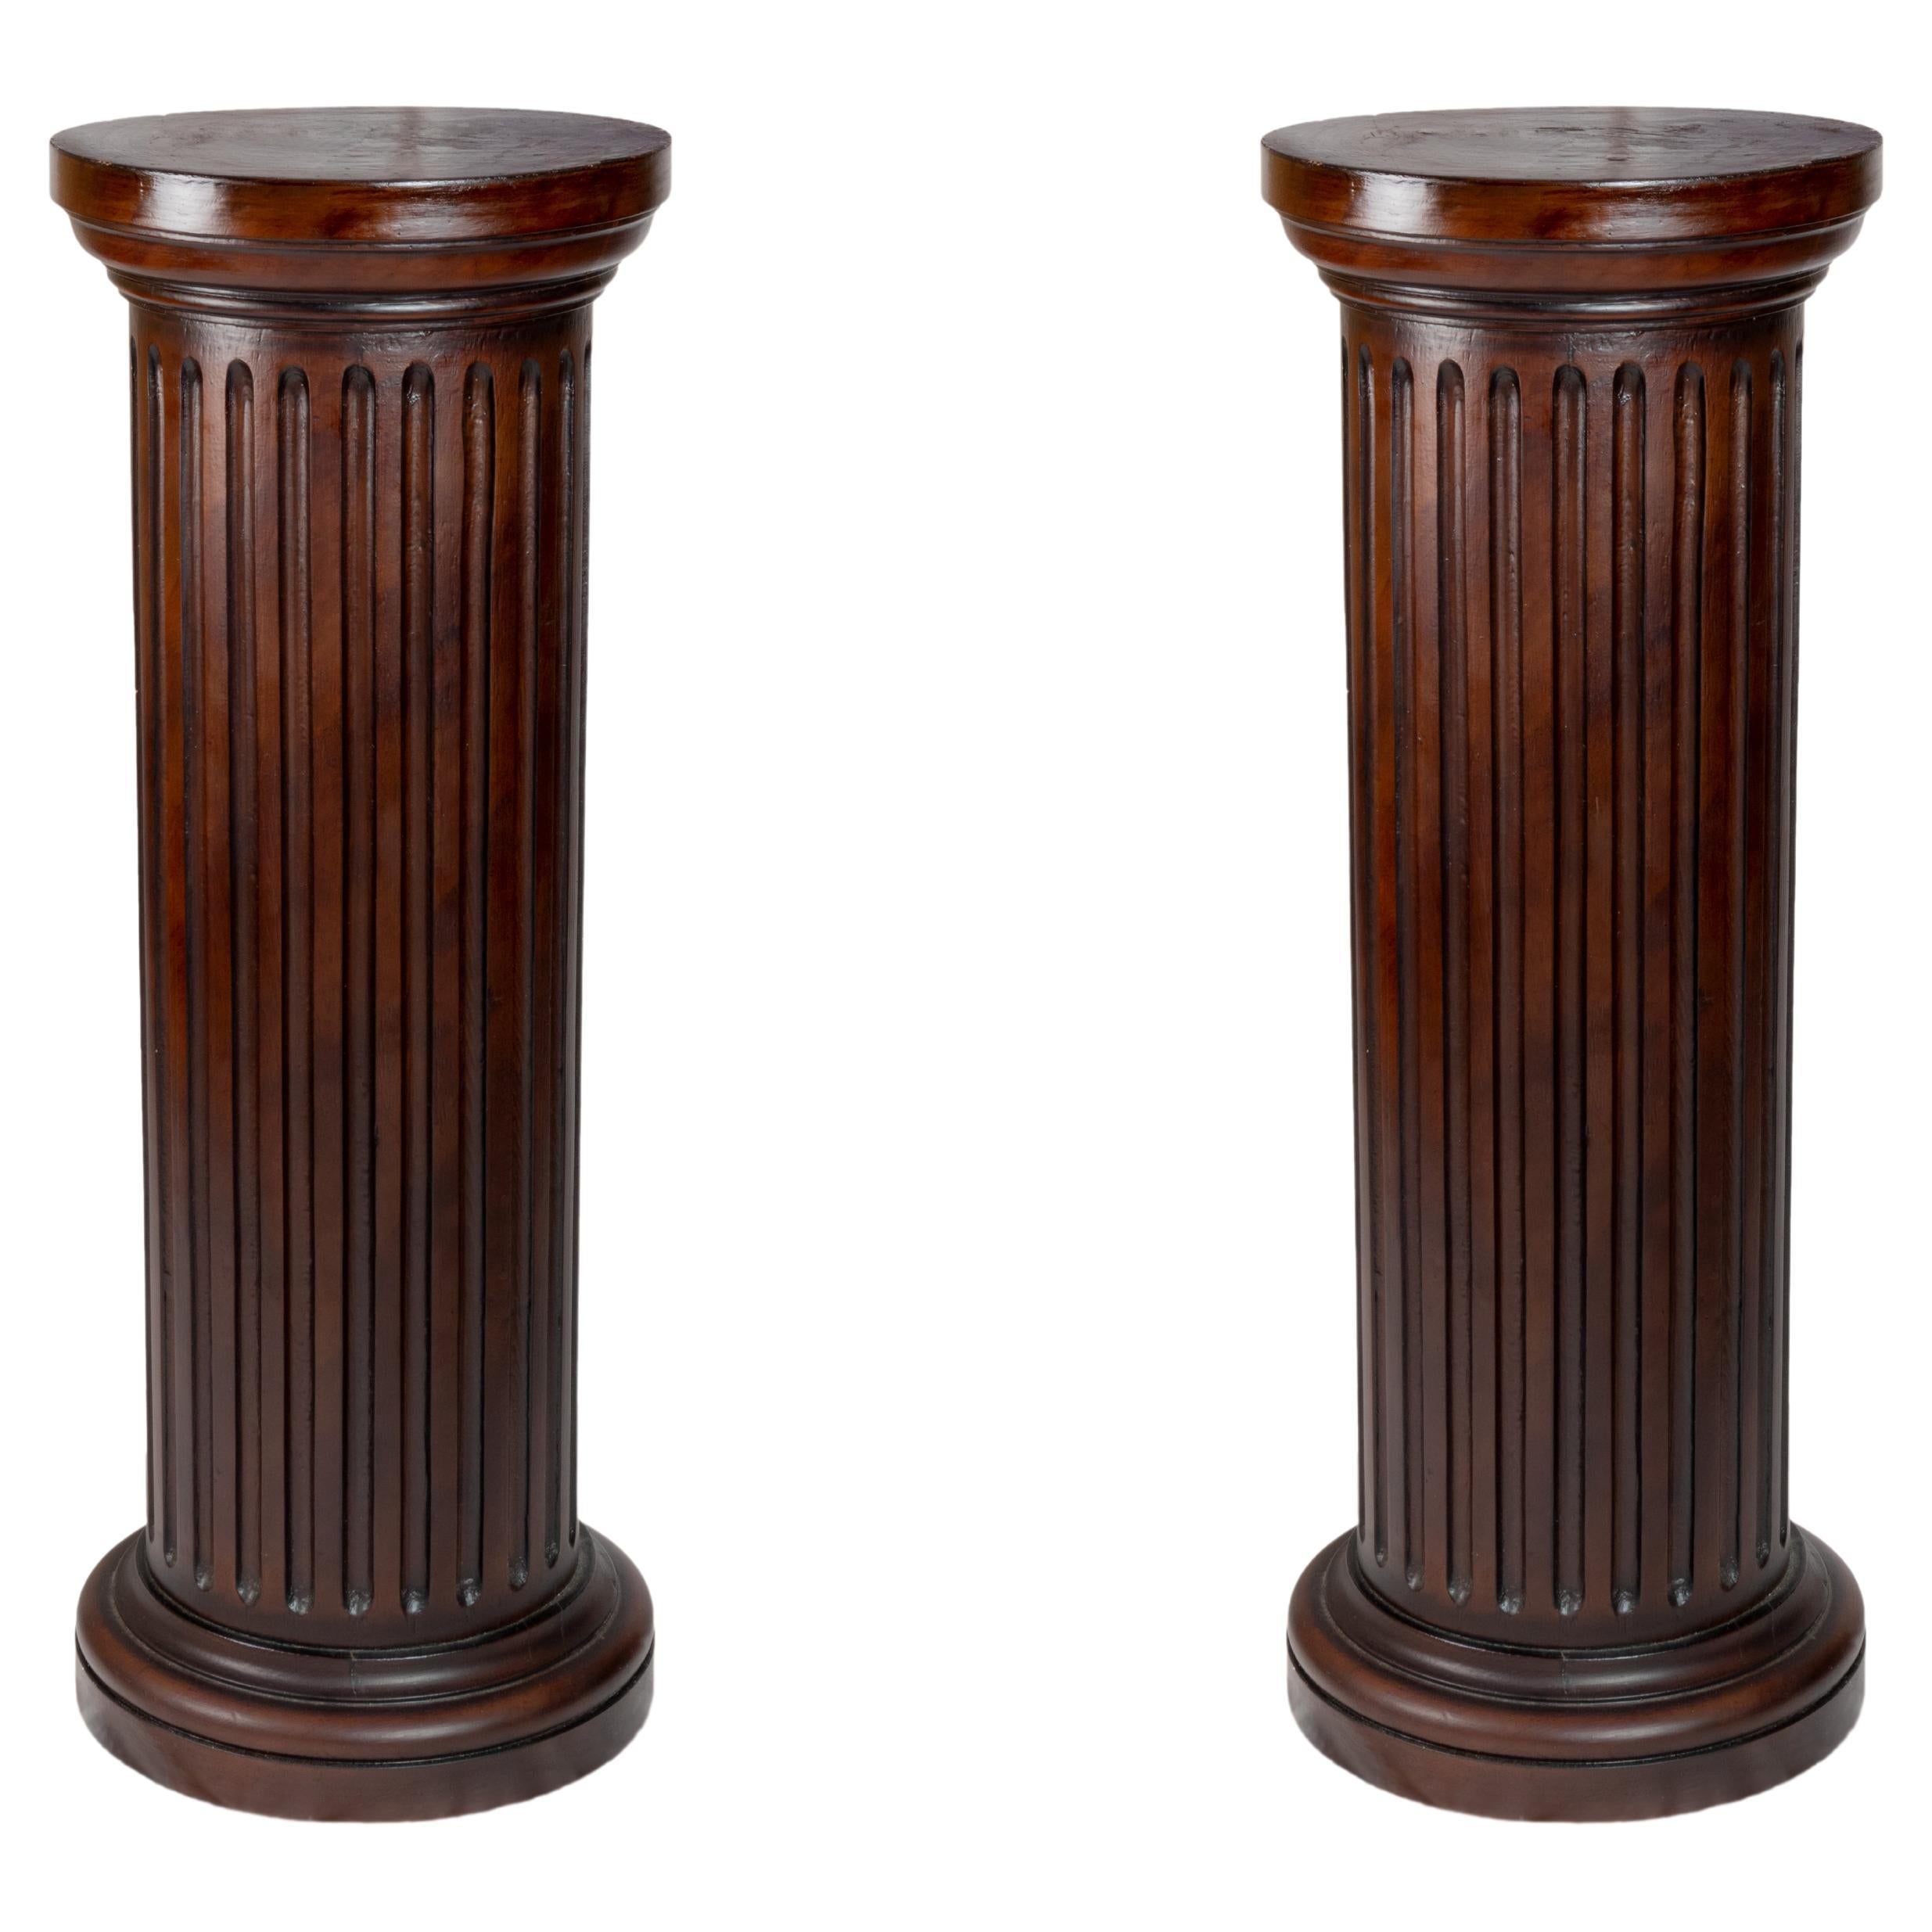  Paire de colonnes en bois cannelé français, 19ème siècle